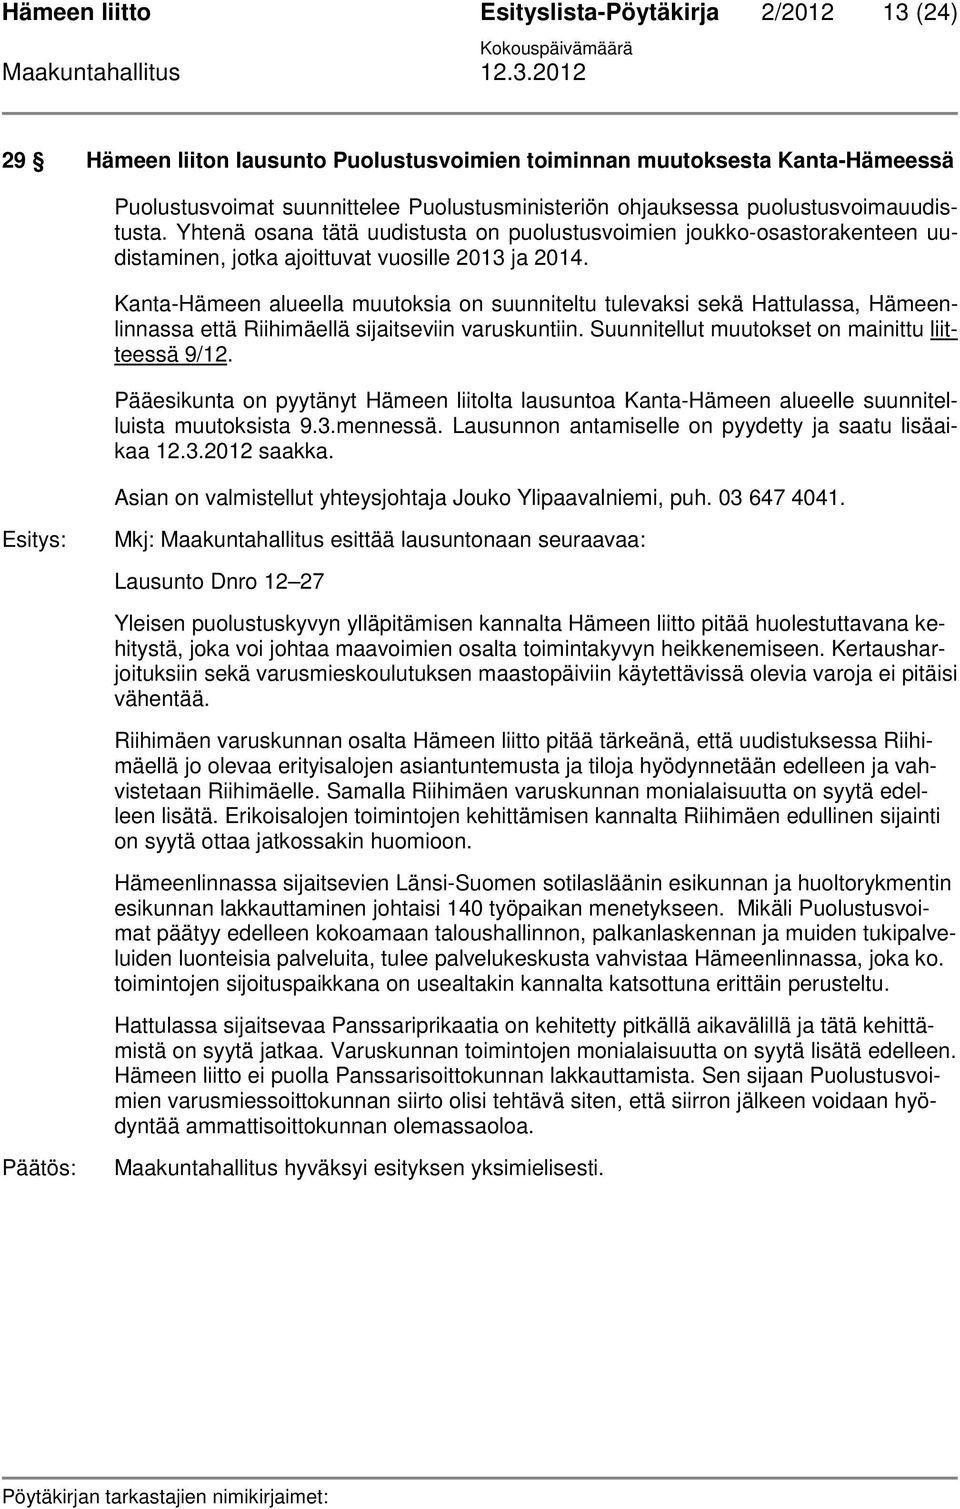 Kanta-Hämeen alueella muutoksia on suunniteltu tulevaksi sekä Hattulassa, Hämeenlinnassa että Riihimäellä sijaitseviin varuskuntiin. Suunnitellut muutokset on mainittu liitteessä 9/12.